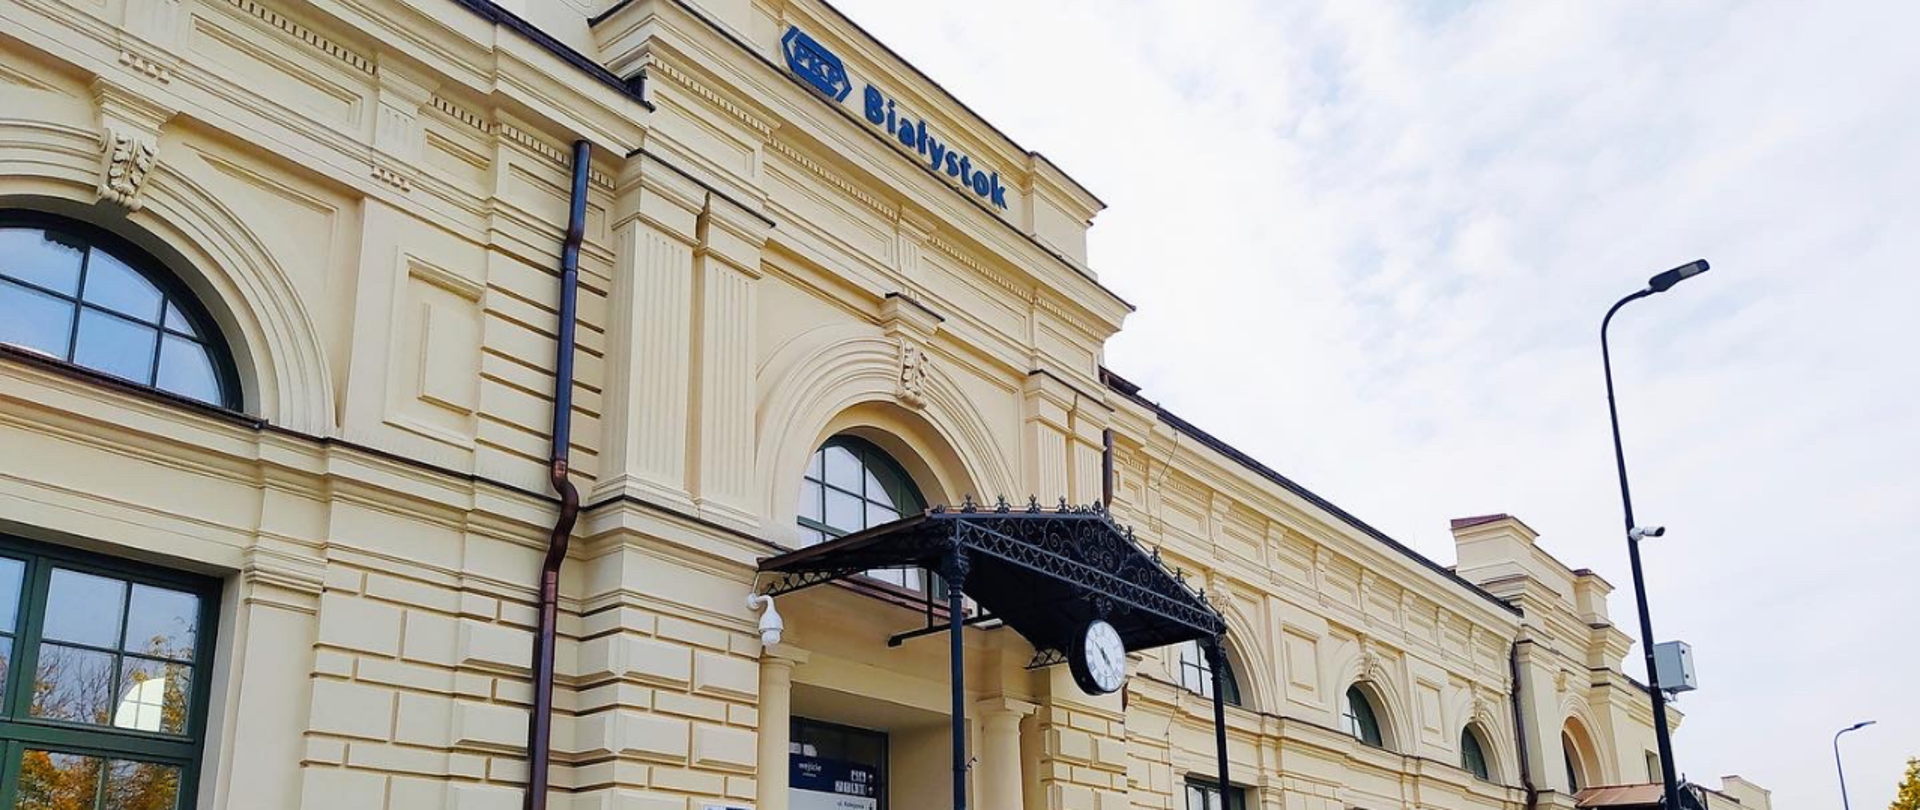 Odnowiony budynek dworca w Białymstoku. Widoczny napis Białystok oraz logo PKP. Poniżej fragment drzwi wejściowych z zadaszeniem i zegarem